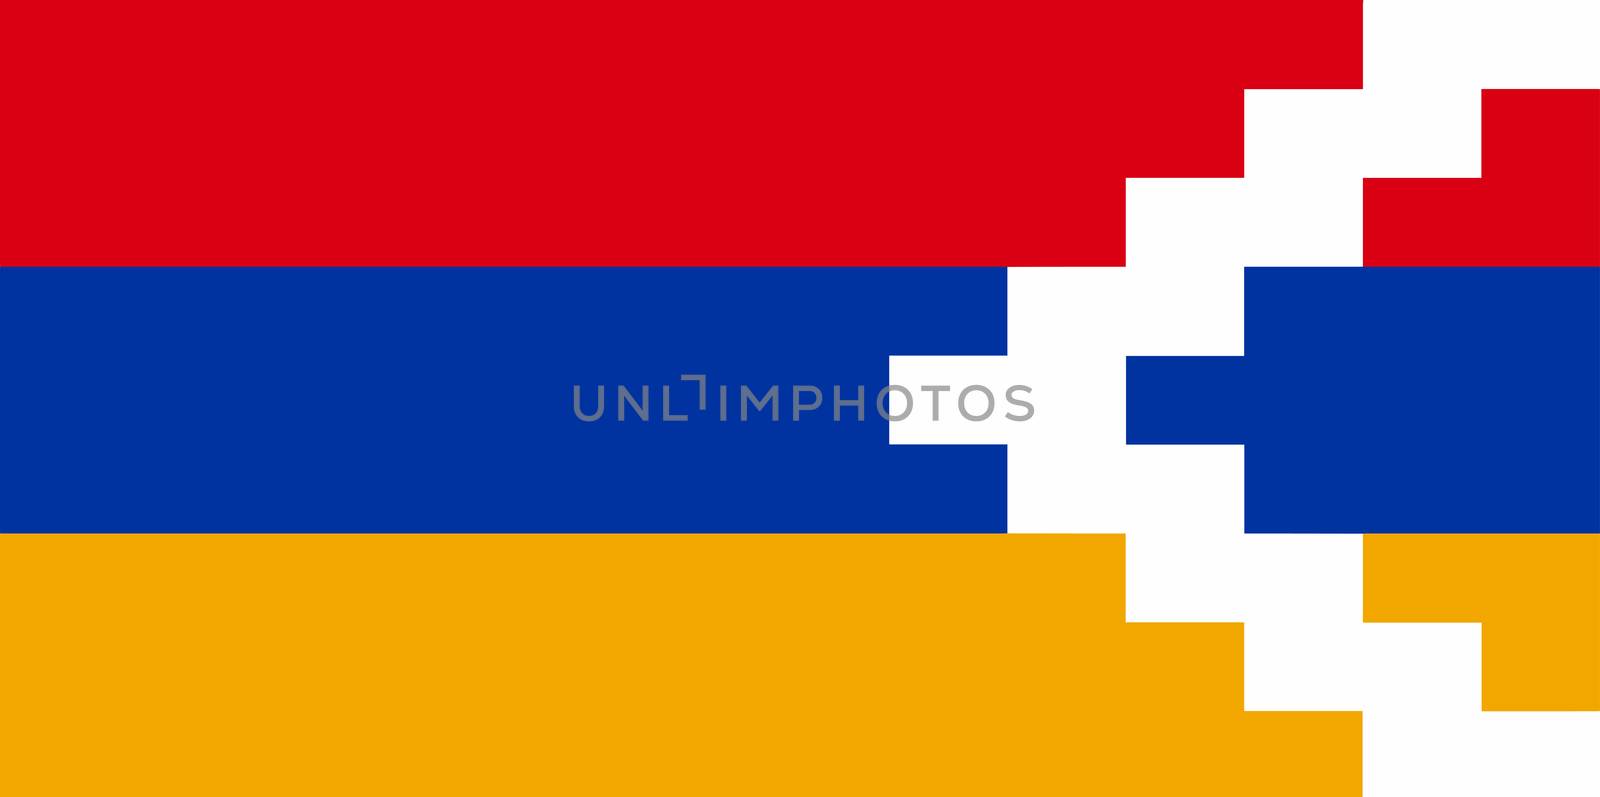 The Artsakh national flag